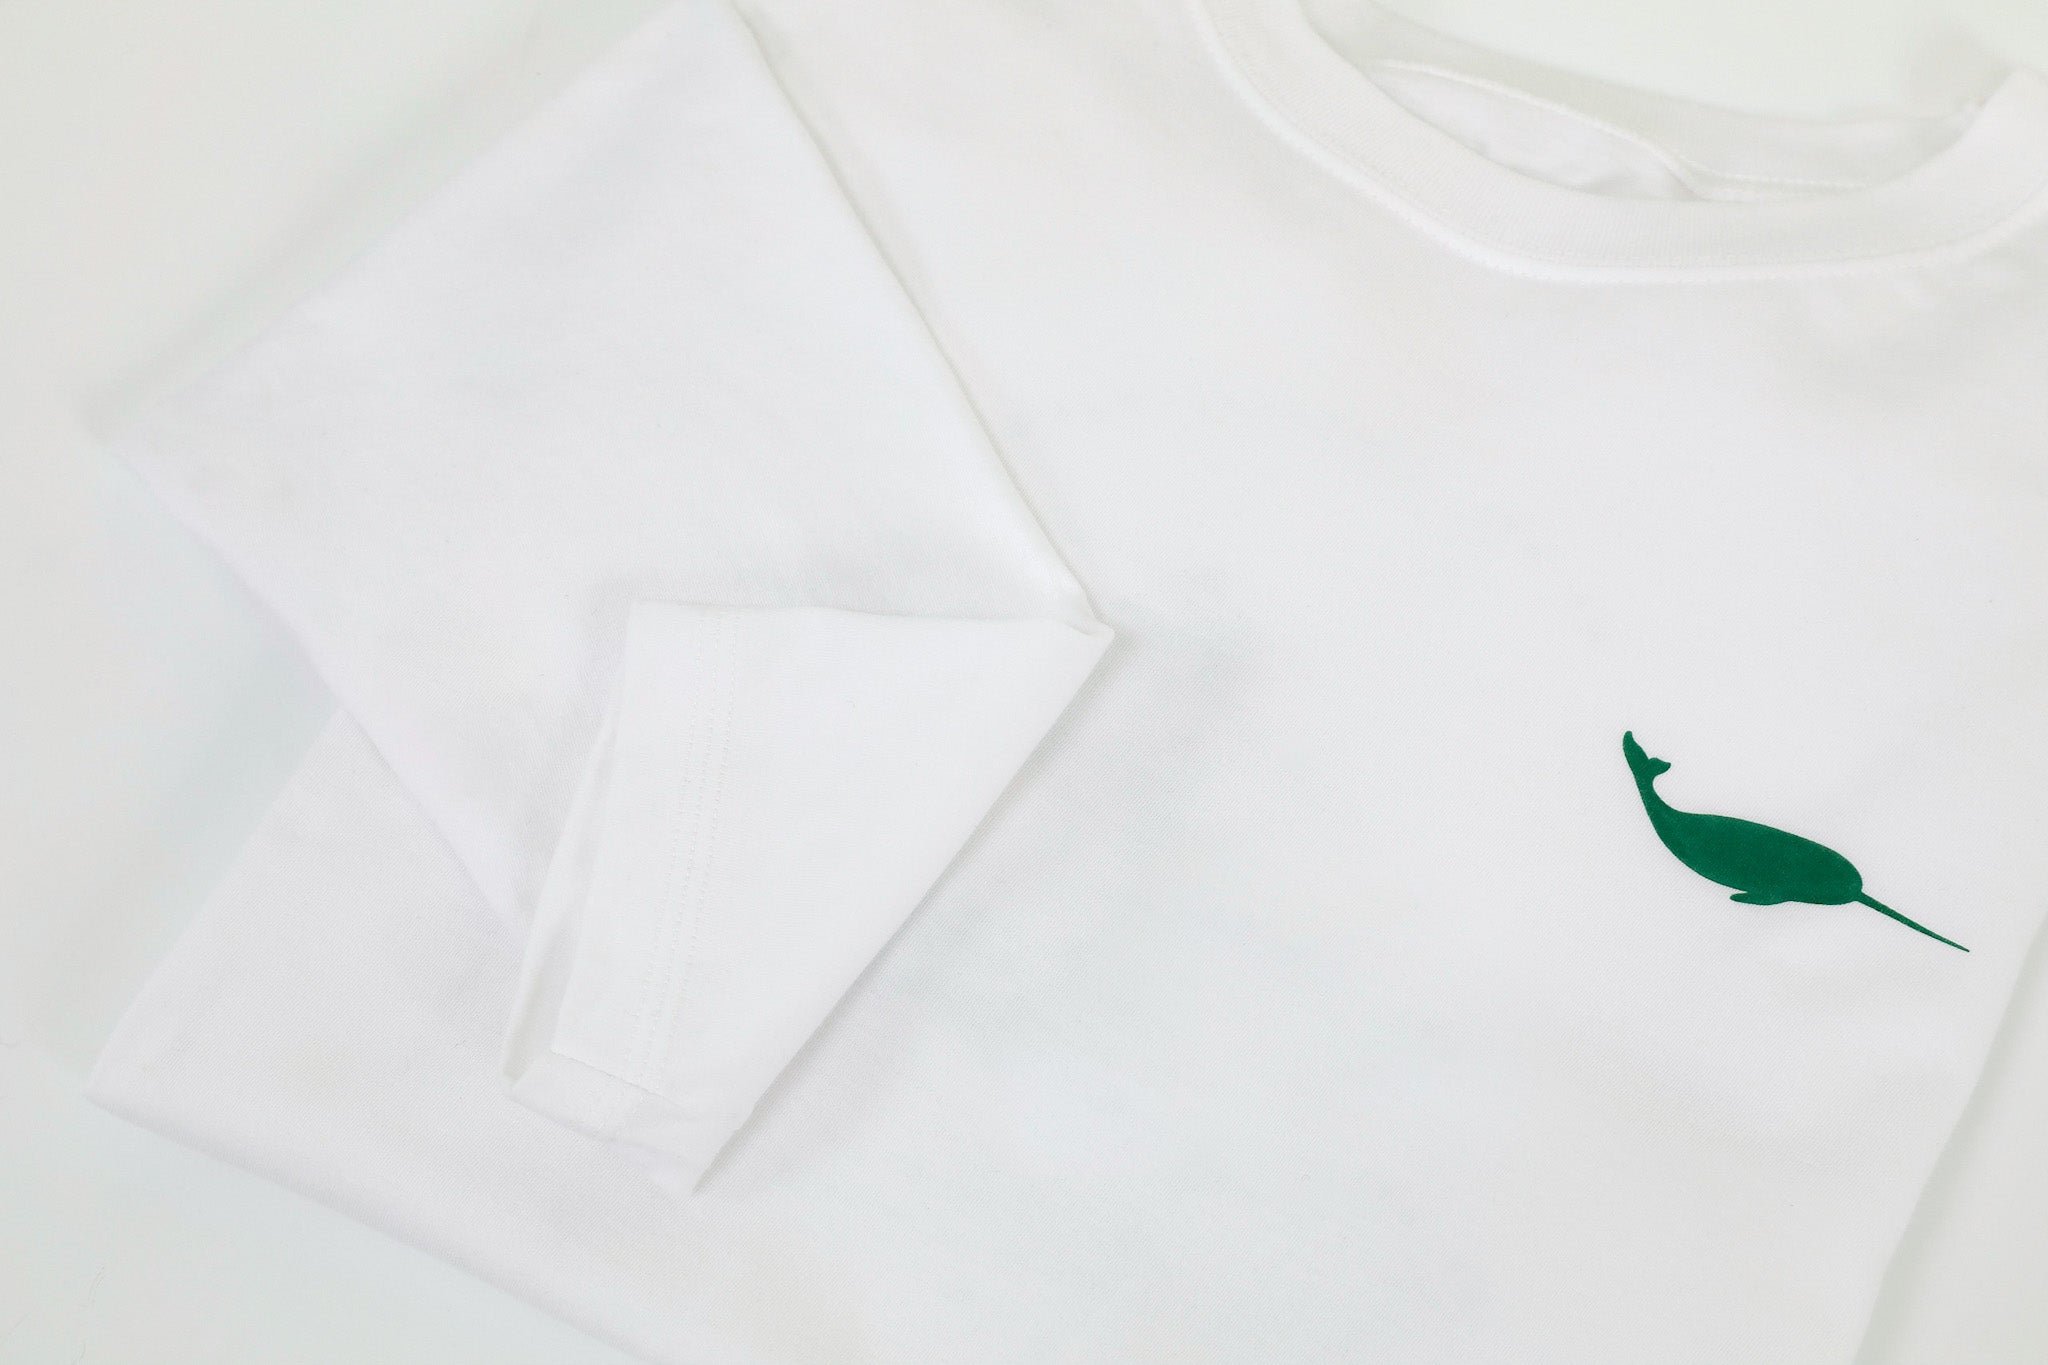 Unisex Long sleeve shirt - White